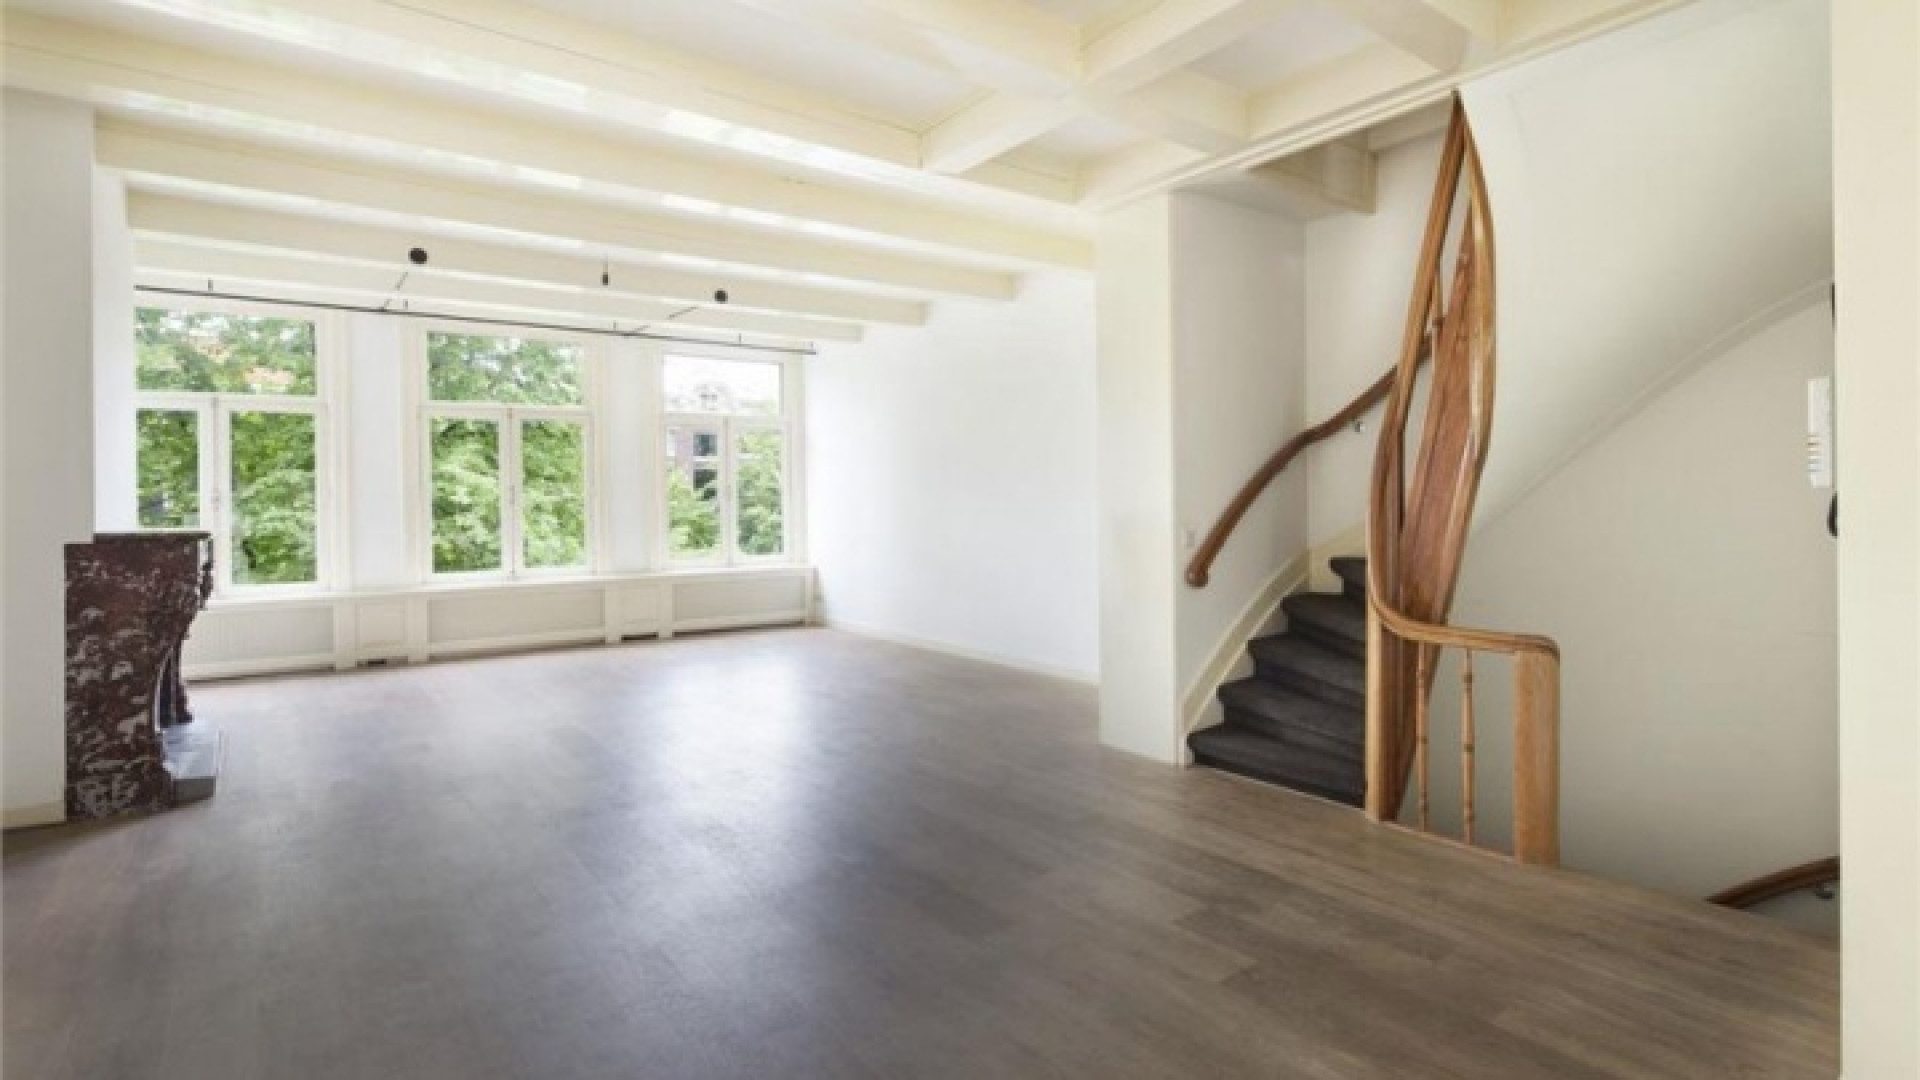 DJ Tiesto verkoopt zijn luxe appartement met vette winst. Zie foto's